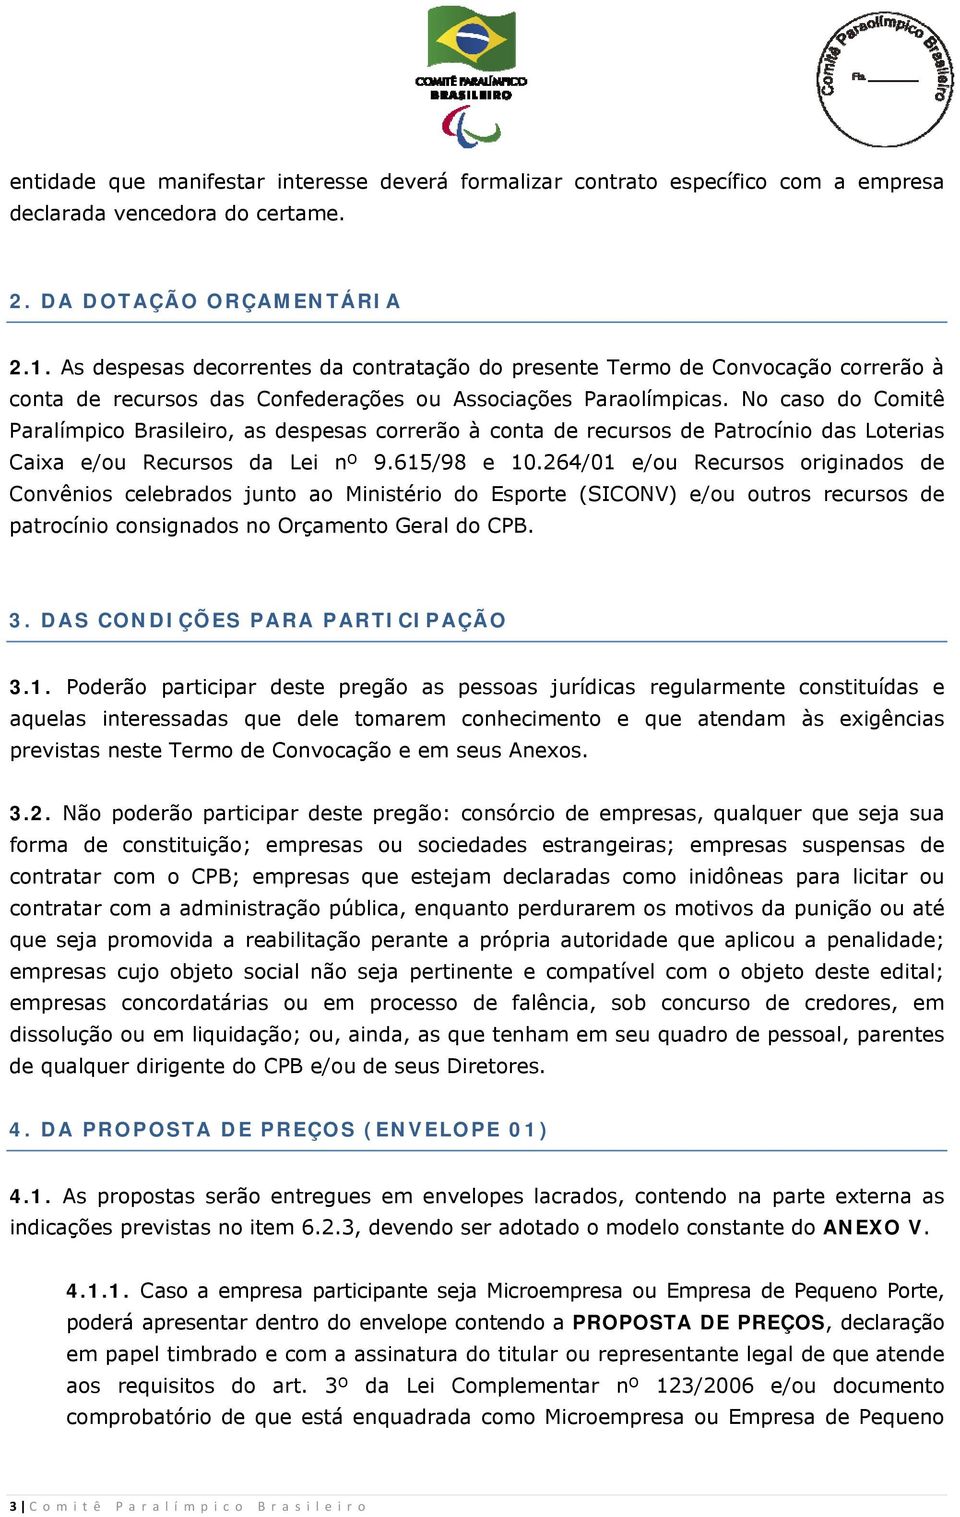 No caso do Comitê Paralímpico Brasileiro, as despesas correrão à conta de recursos de Patrocínio das Loterias Caixa e/ou Recursos da Lei nº 9.615/98 e 10.